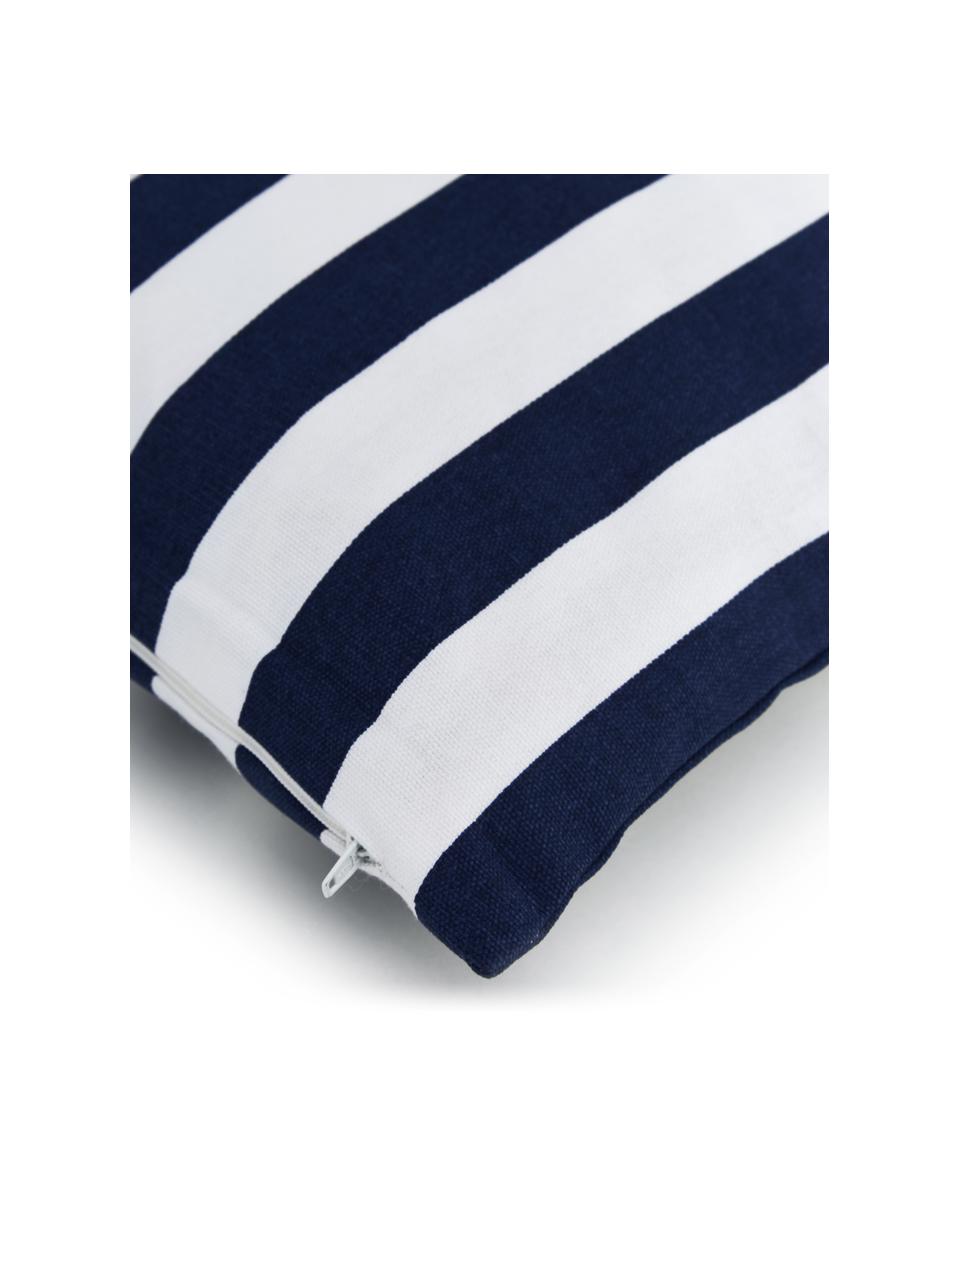 Poszewka na poduszkę Timon, 100% bawełna, Niebieski, S 50 x D 50 cm